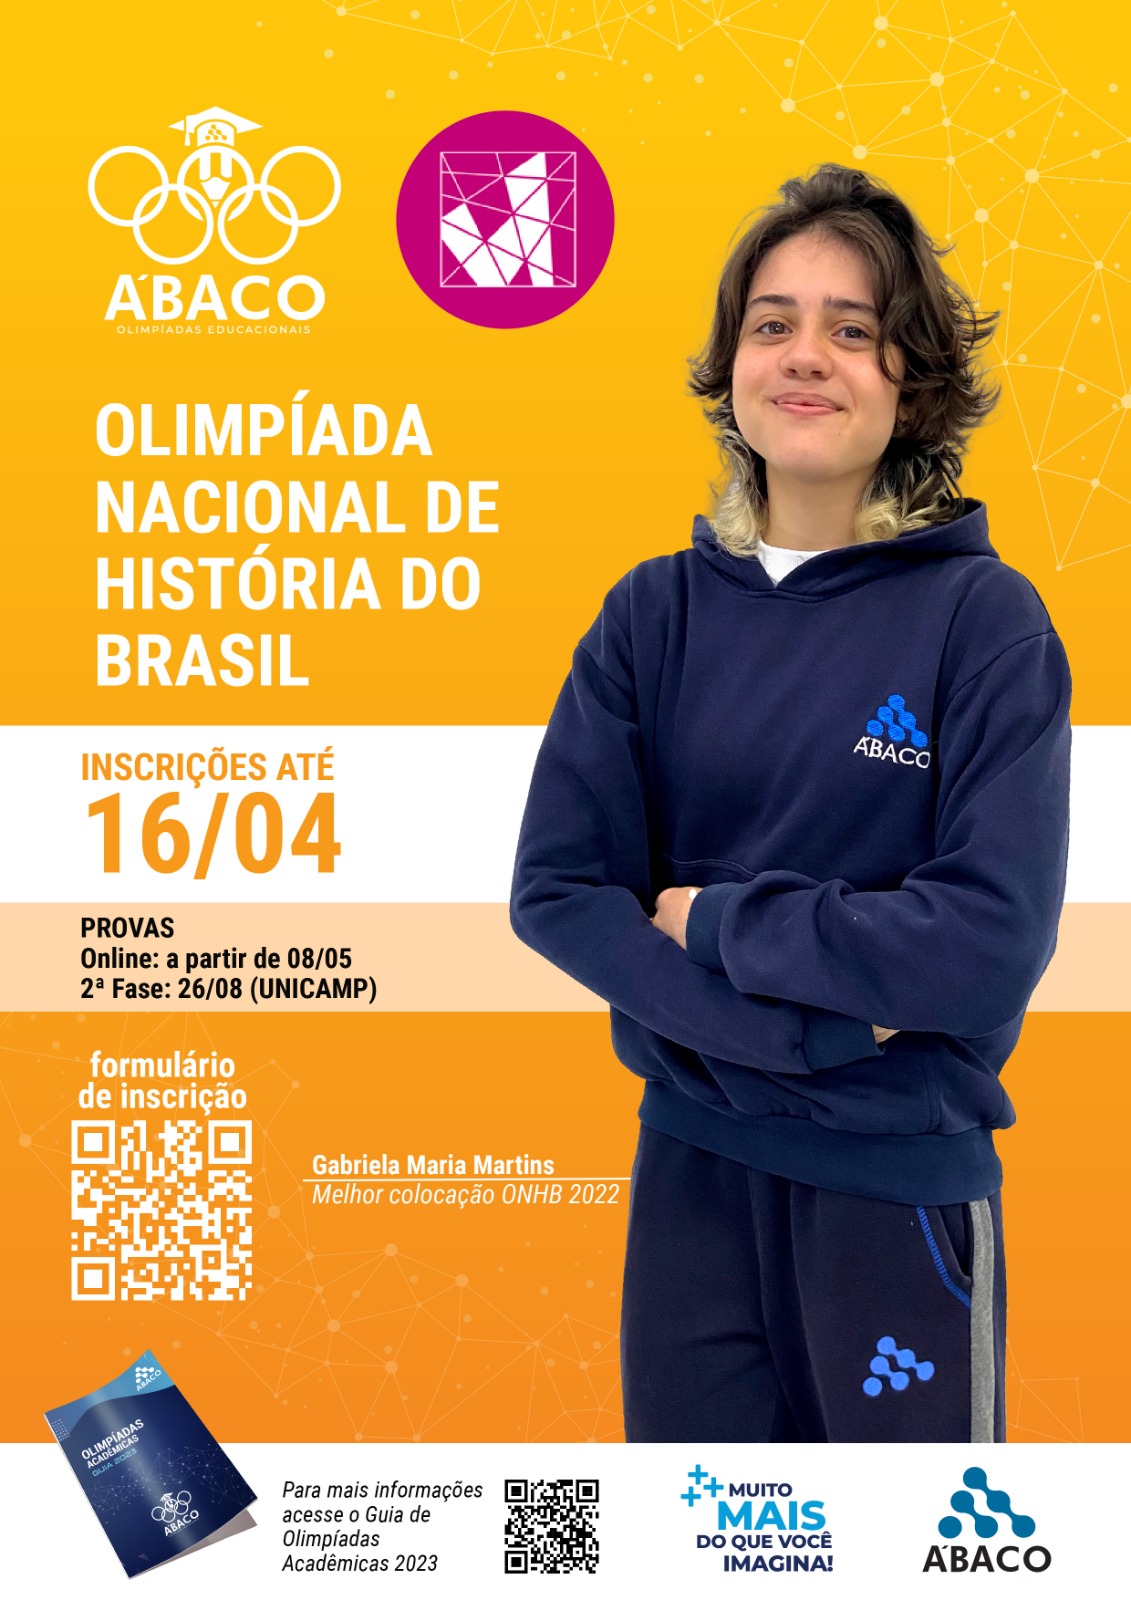 Olimpíadas: origem, história e curiosidades - Brasil Escola